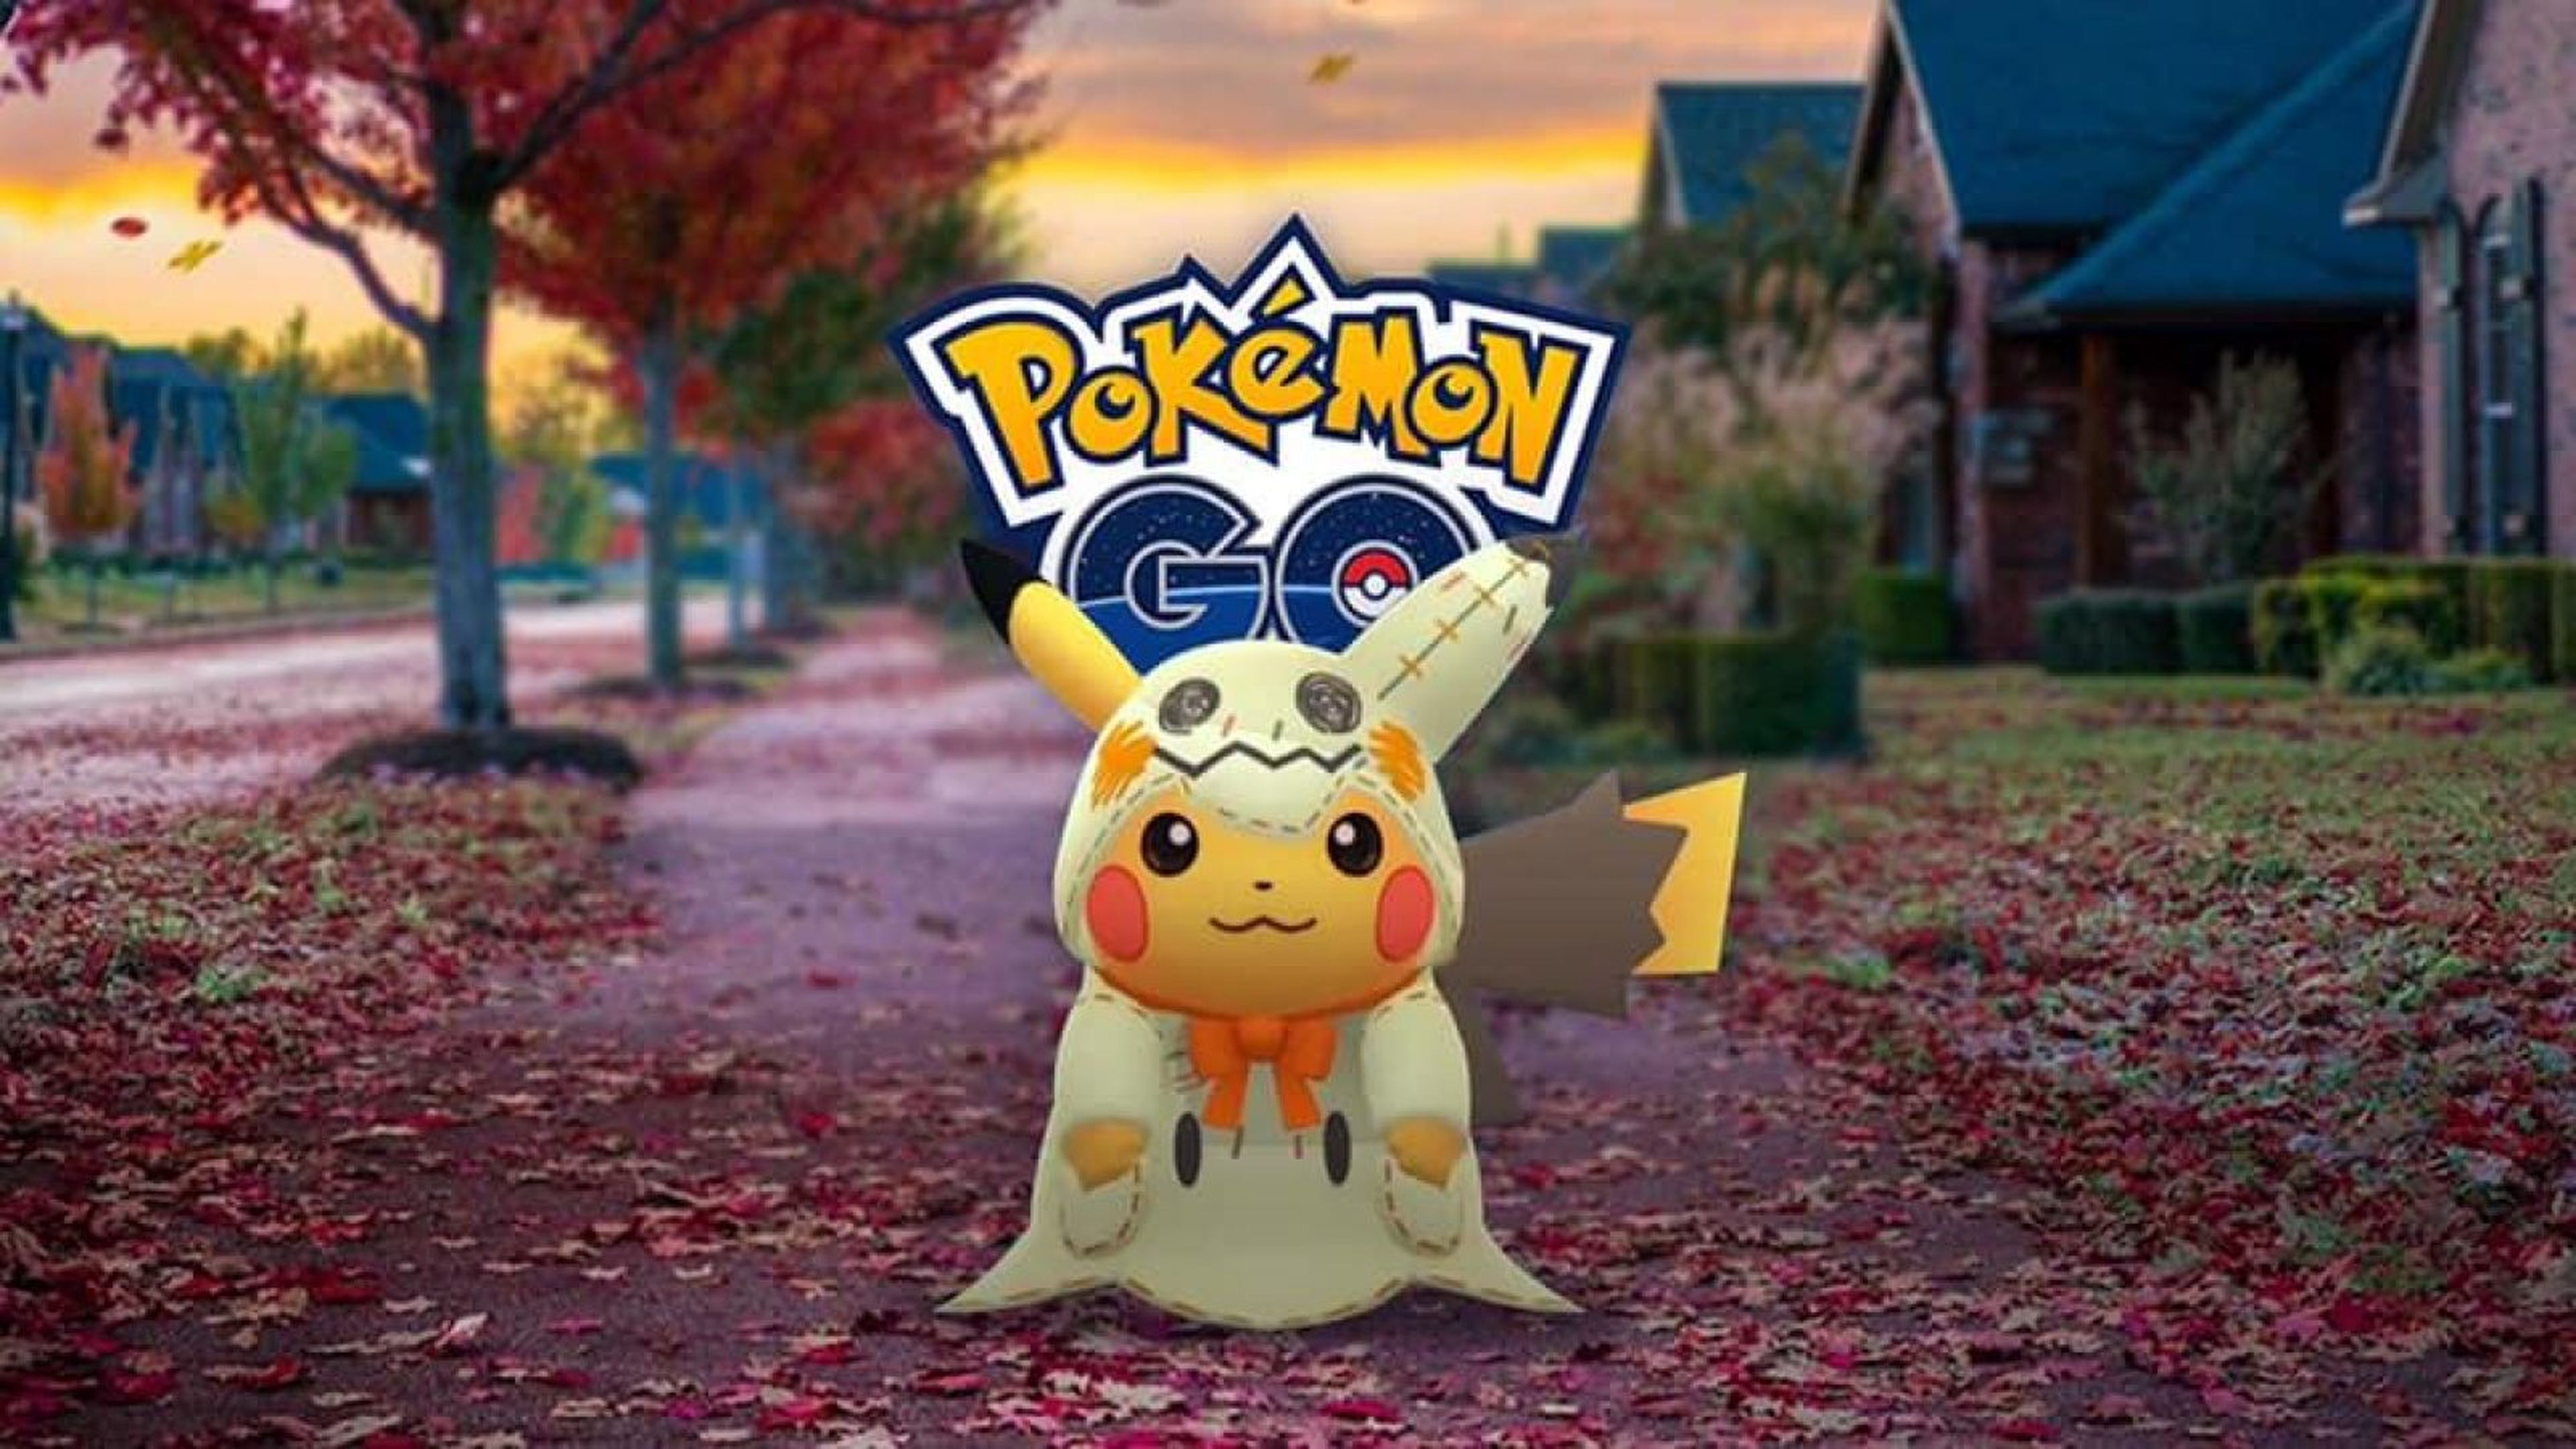 Pokémon GO - Pikachu disfrazado de Mimikyu